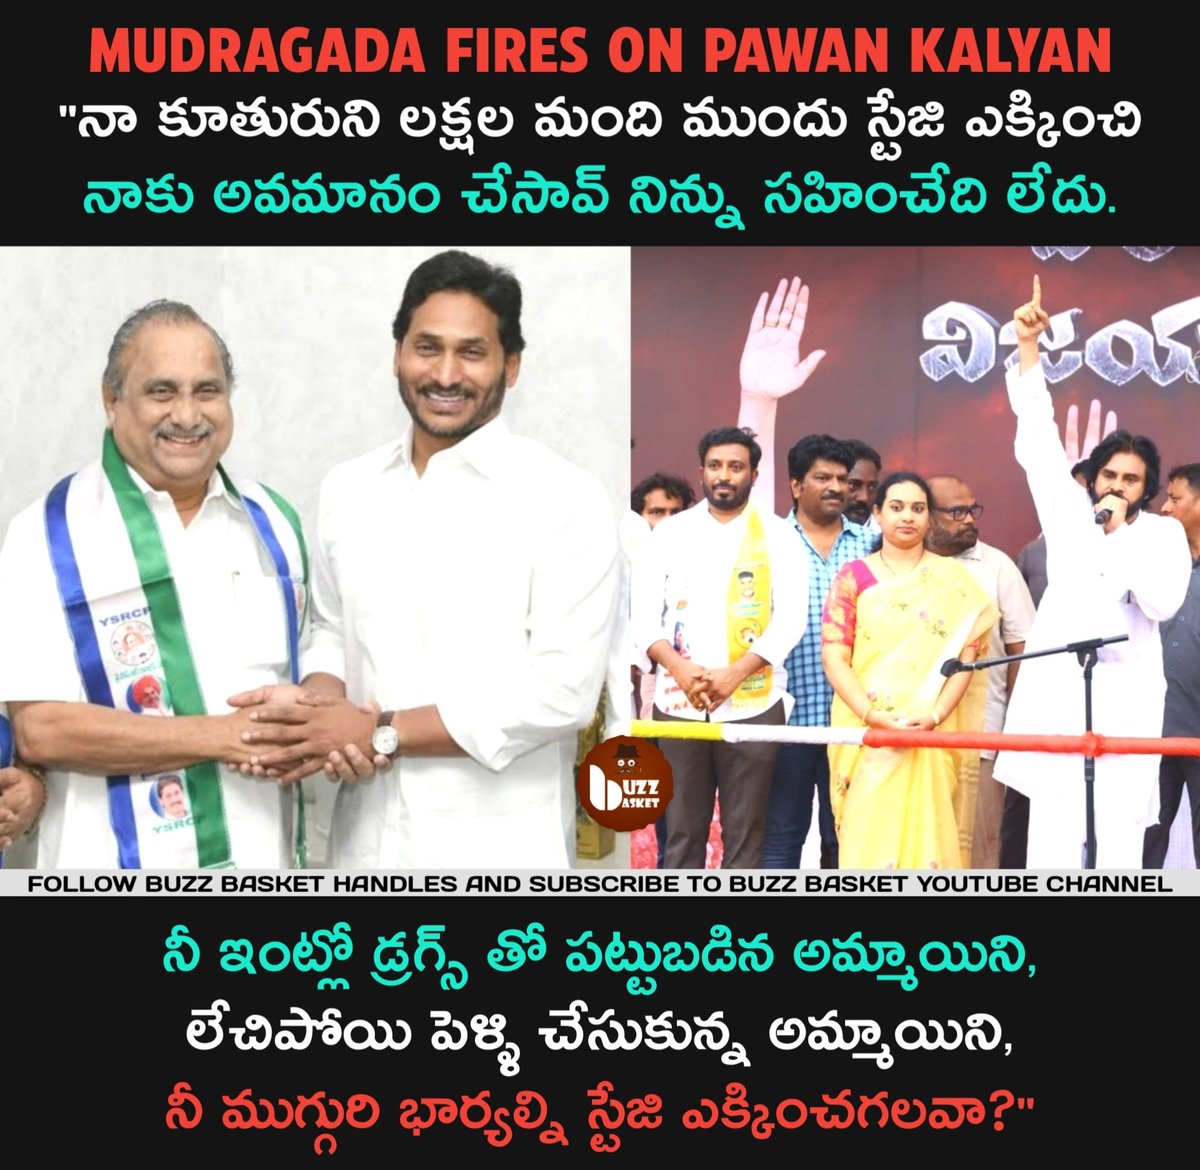 #Mudragada fires on #PawanKalyan! #YSRCP #janasena #JanasenaTDPAlliance